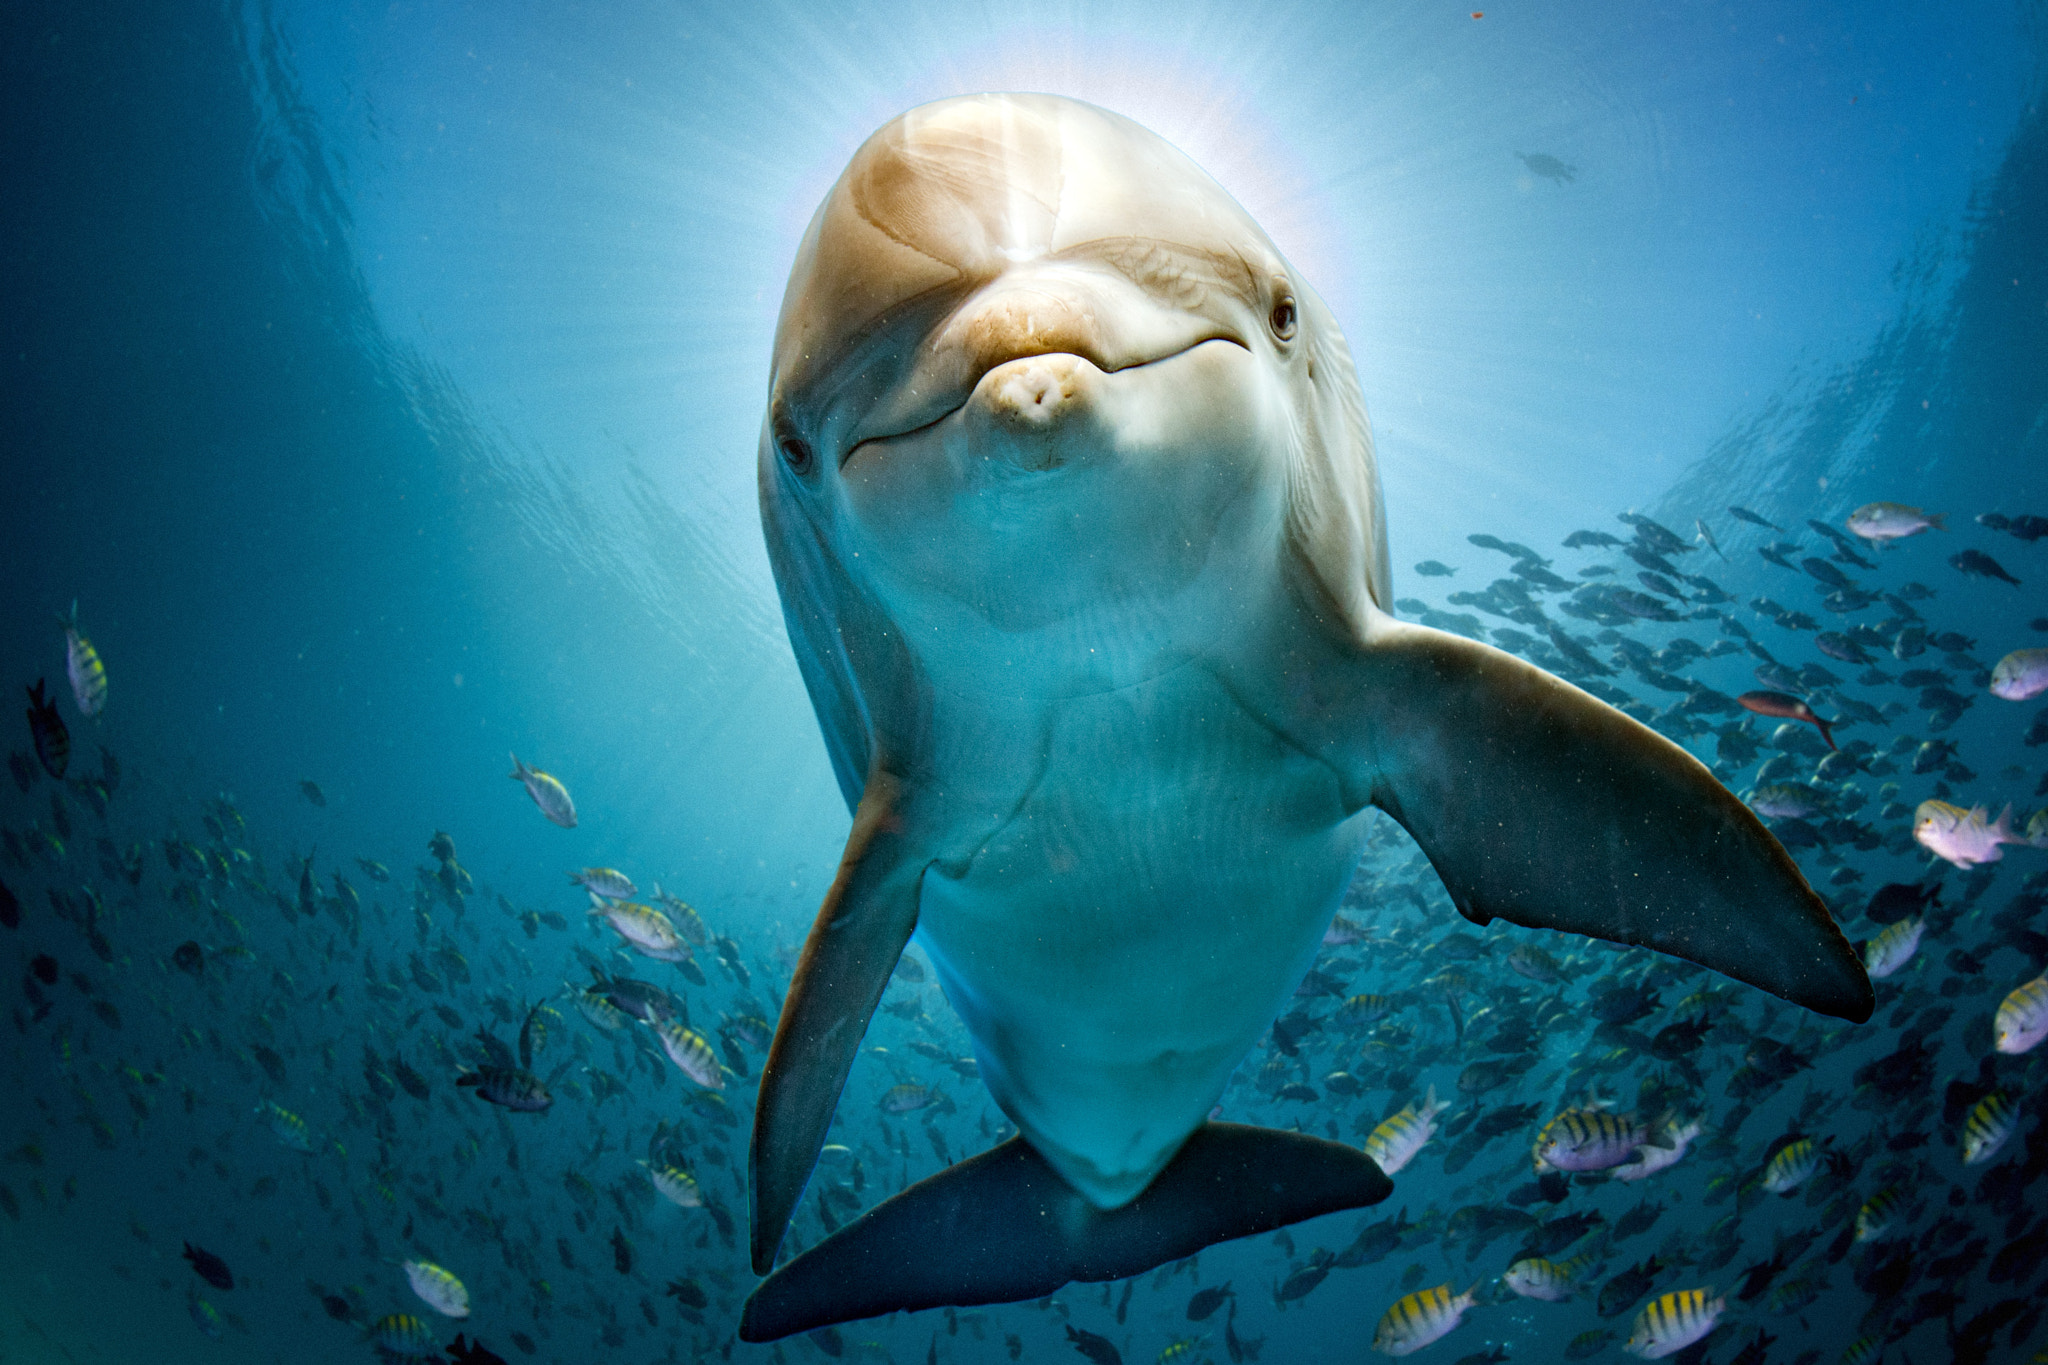 Nikon D5 sample photo. Dolphin tale photography